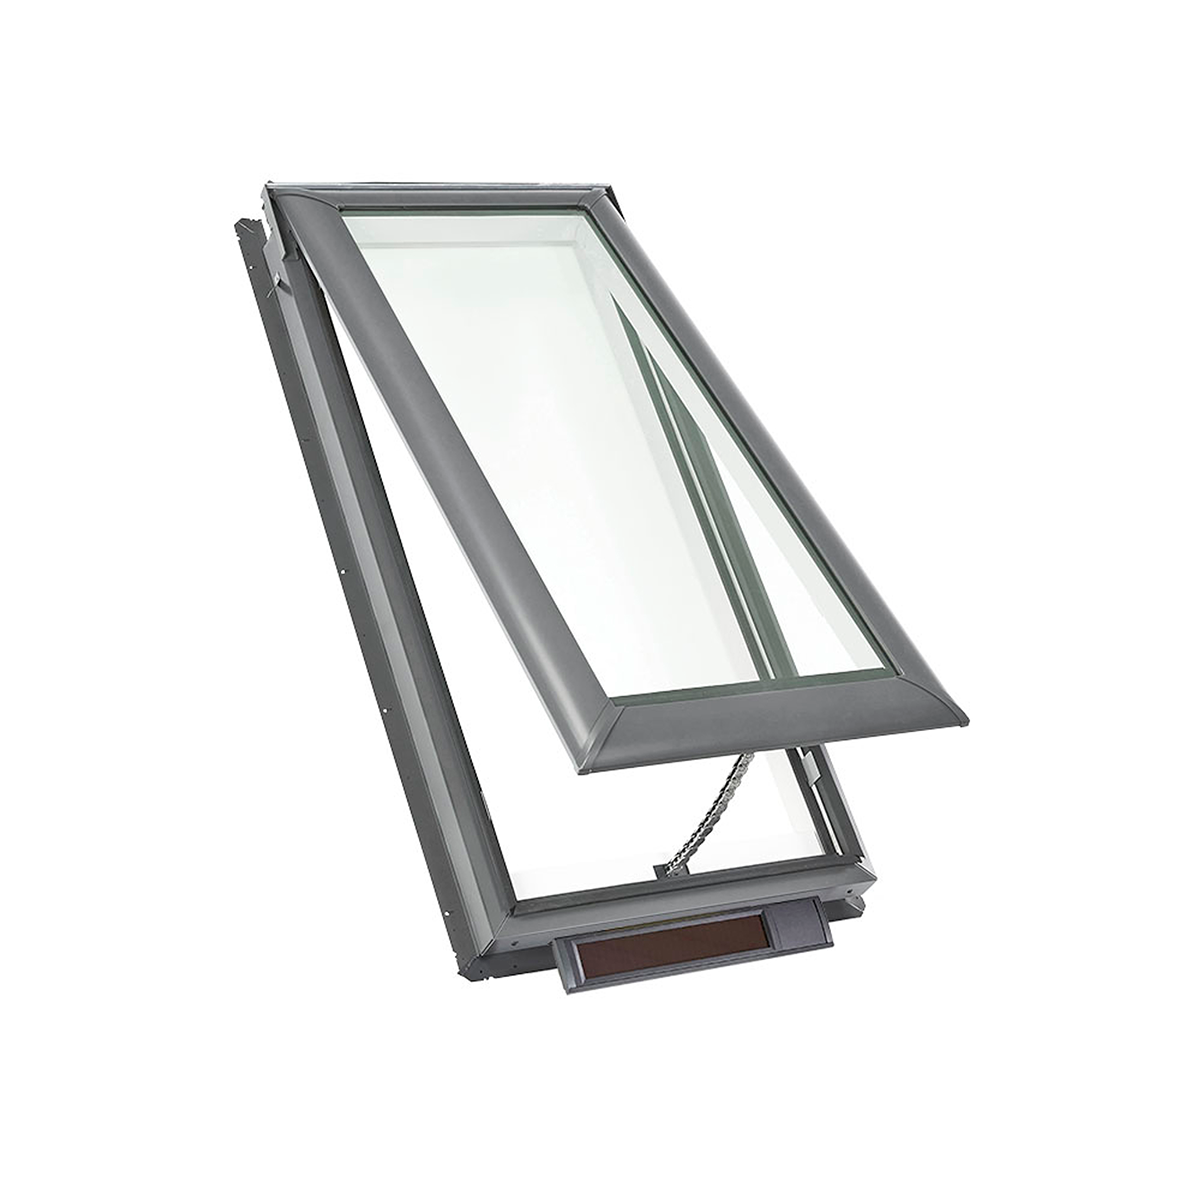 Claraboya de montaje en plataforma con energía solar y vidrio laminado de bajo E3 - 30-1/16 pulg. x 30 pulg. - VSS M02